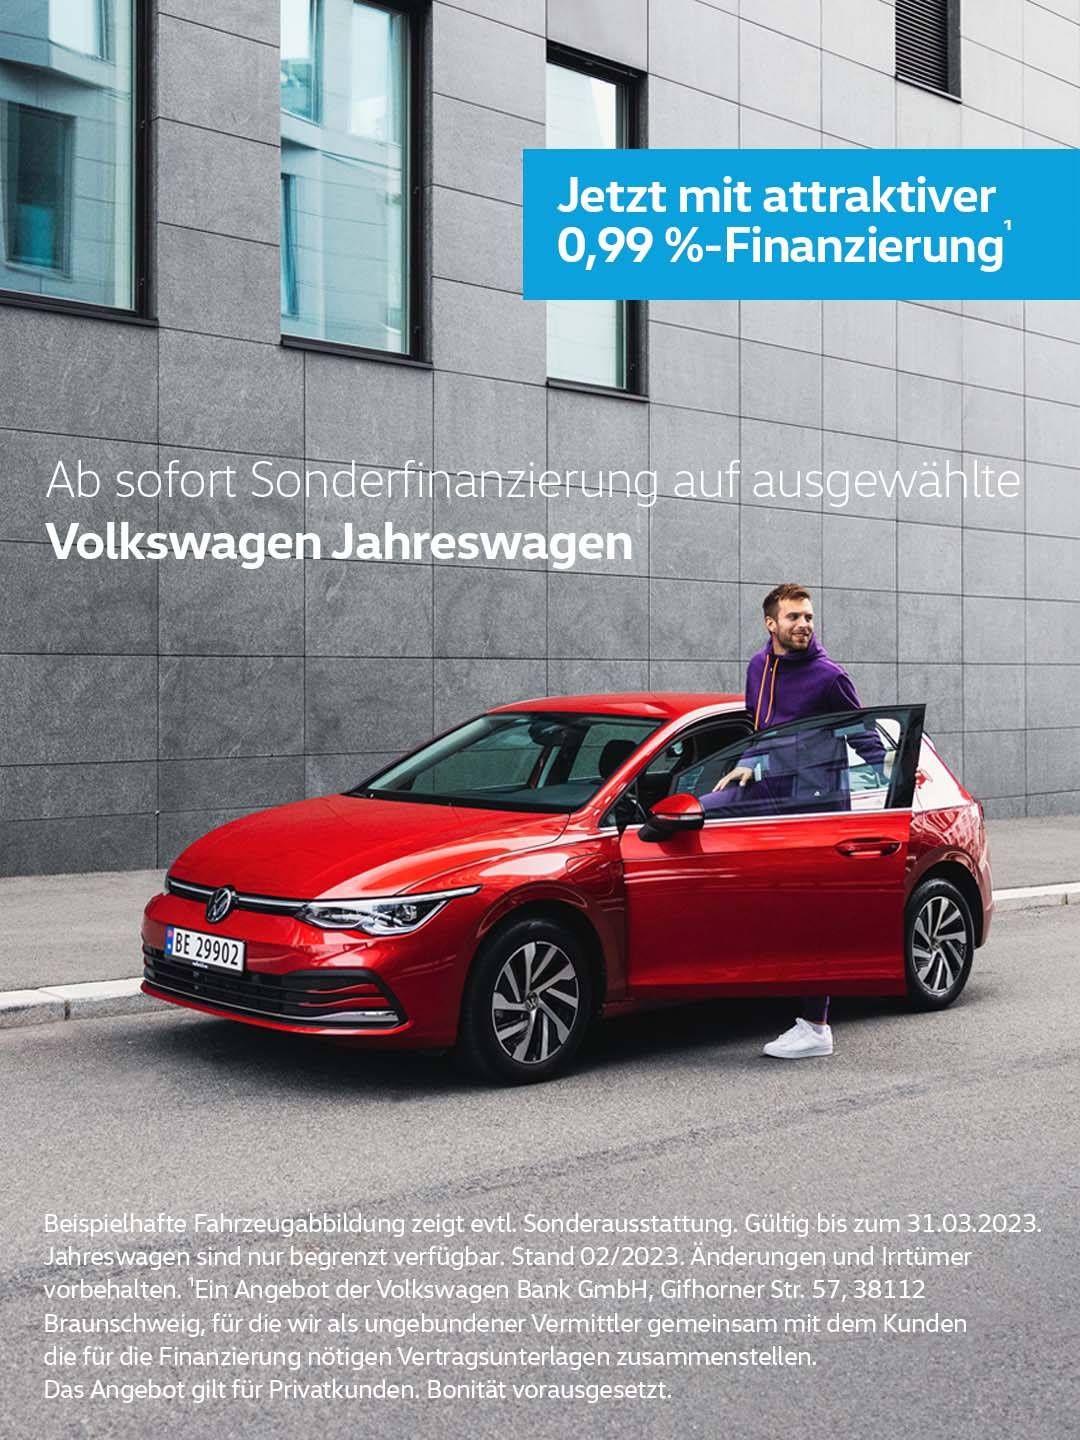 Volkswagen Jahreswagen Sonderfinanzierung 0,99 %